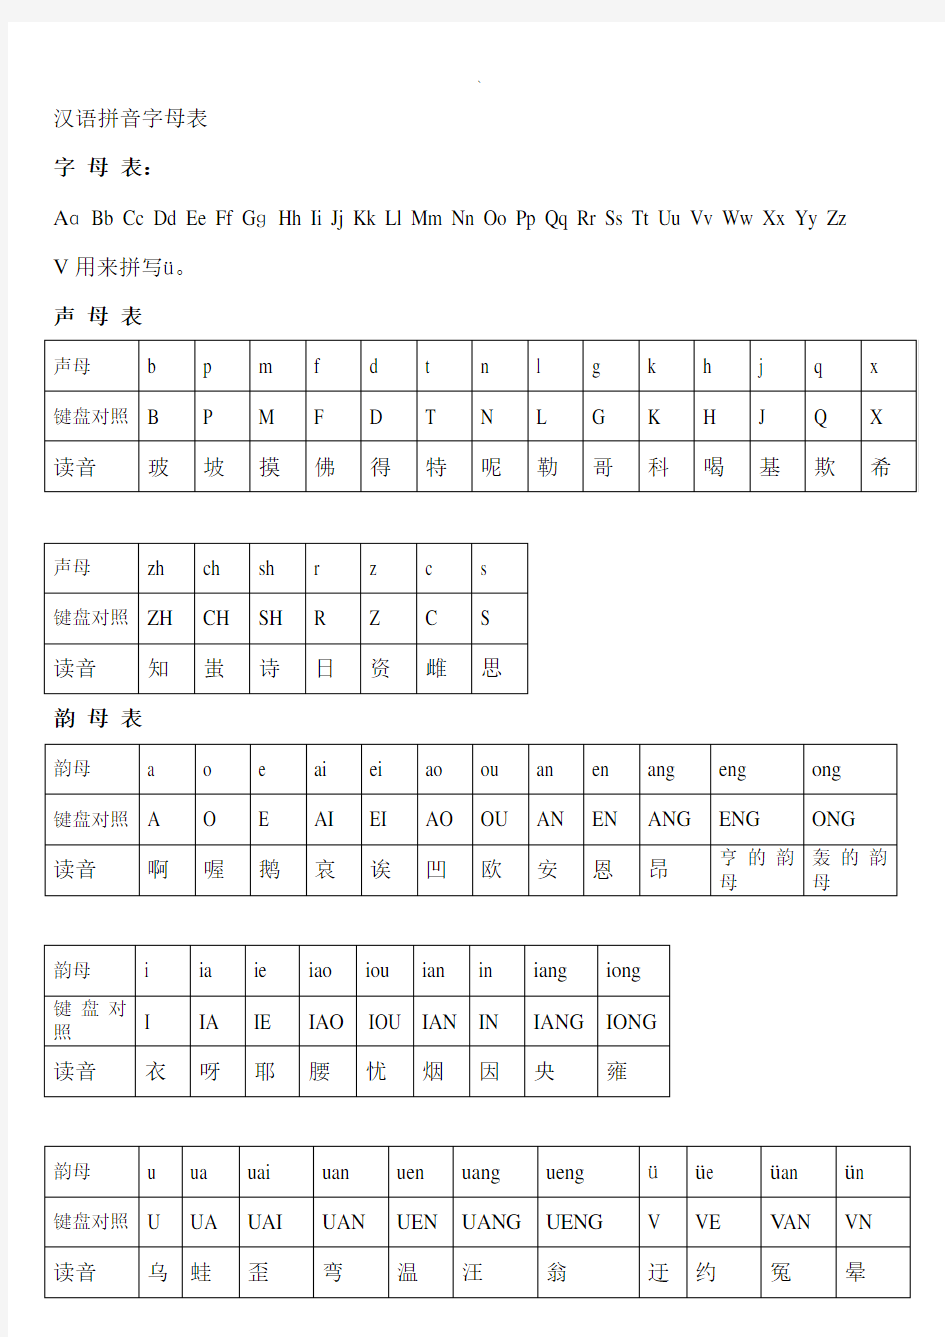 汉语拼音字母表与键盘对照学习拼音打字法